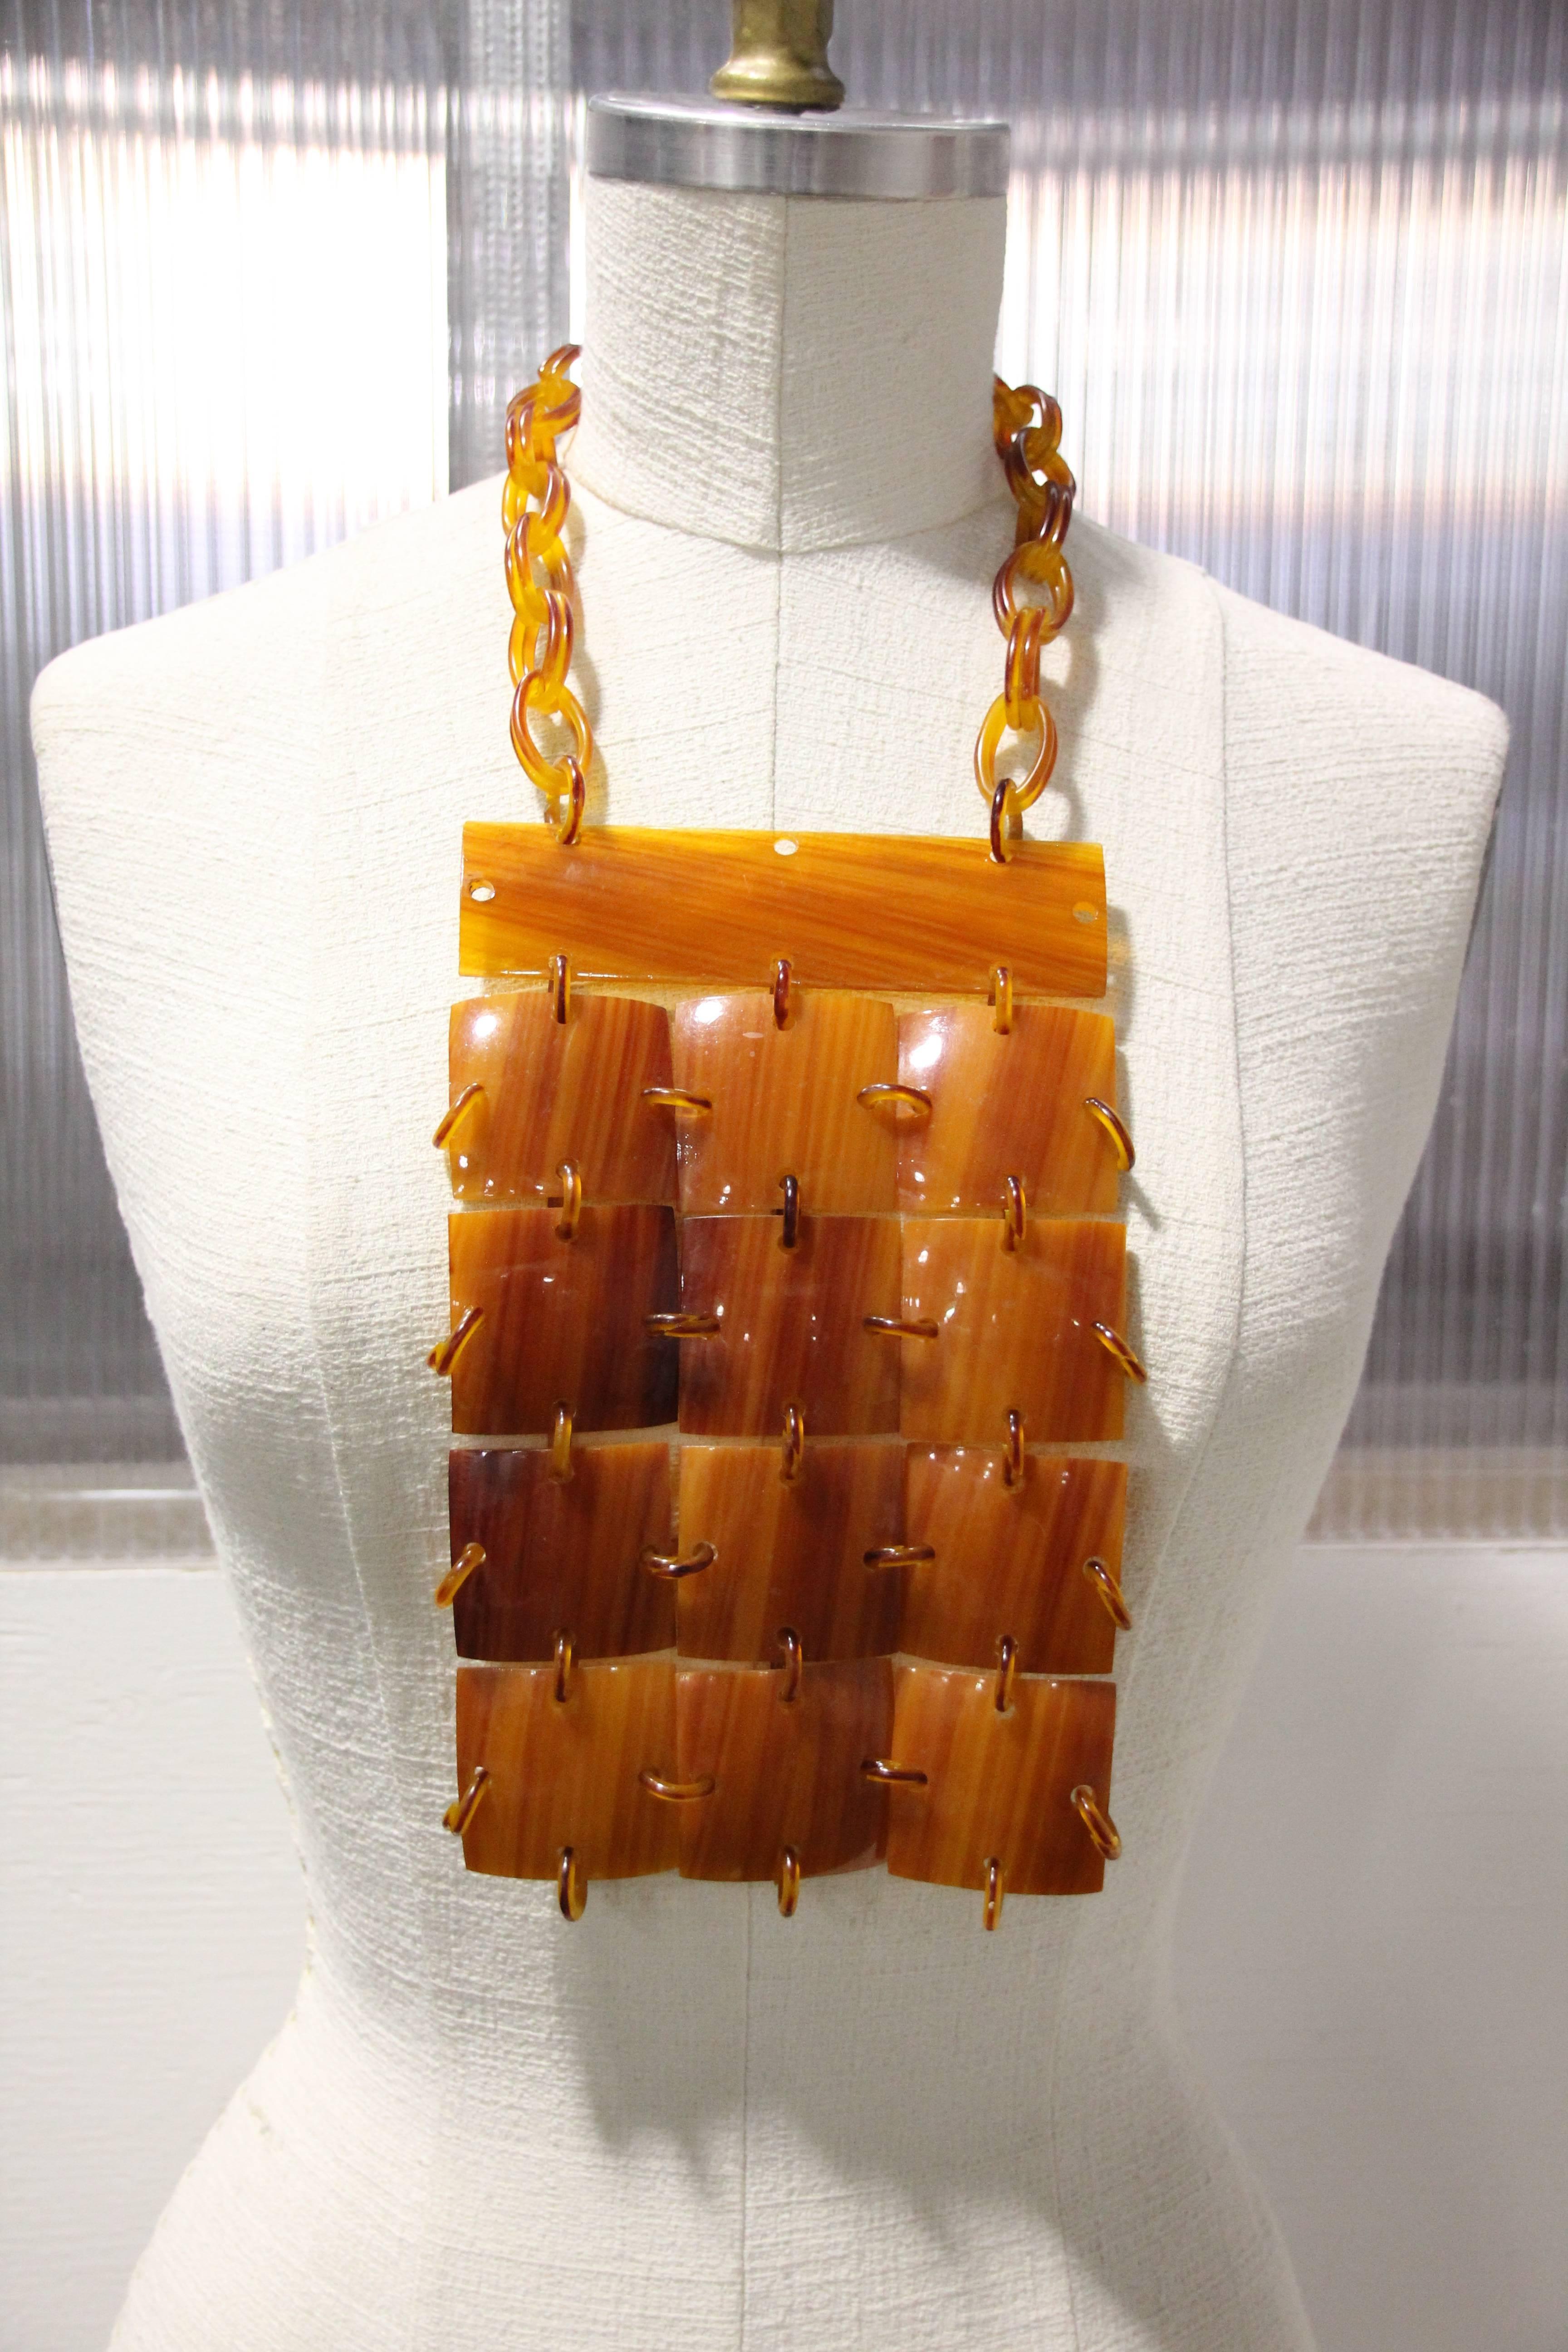 Ce collier plastron en bakélite couleur carmel des années 1960 est composé de carreaux de forme carrée qui sont reliés par des anneaux de sautage du même matériau ainsi que par la chaîne en bakélite autour du cou. 
Une grande barre plate en forme de